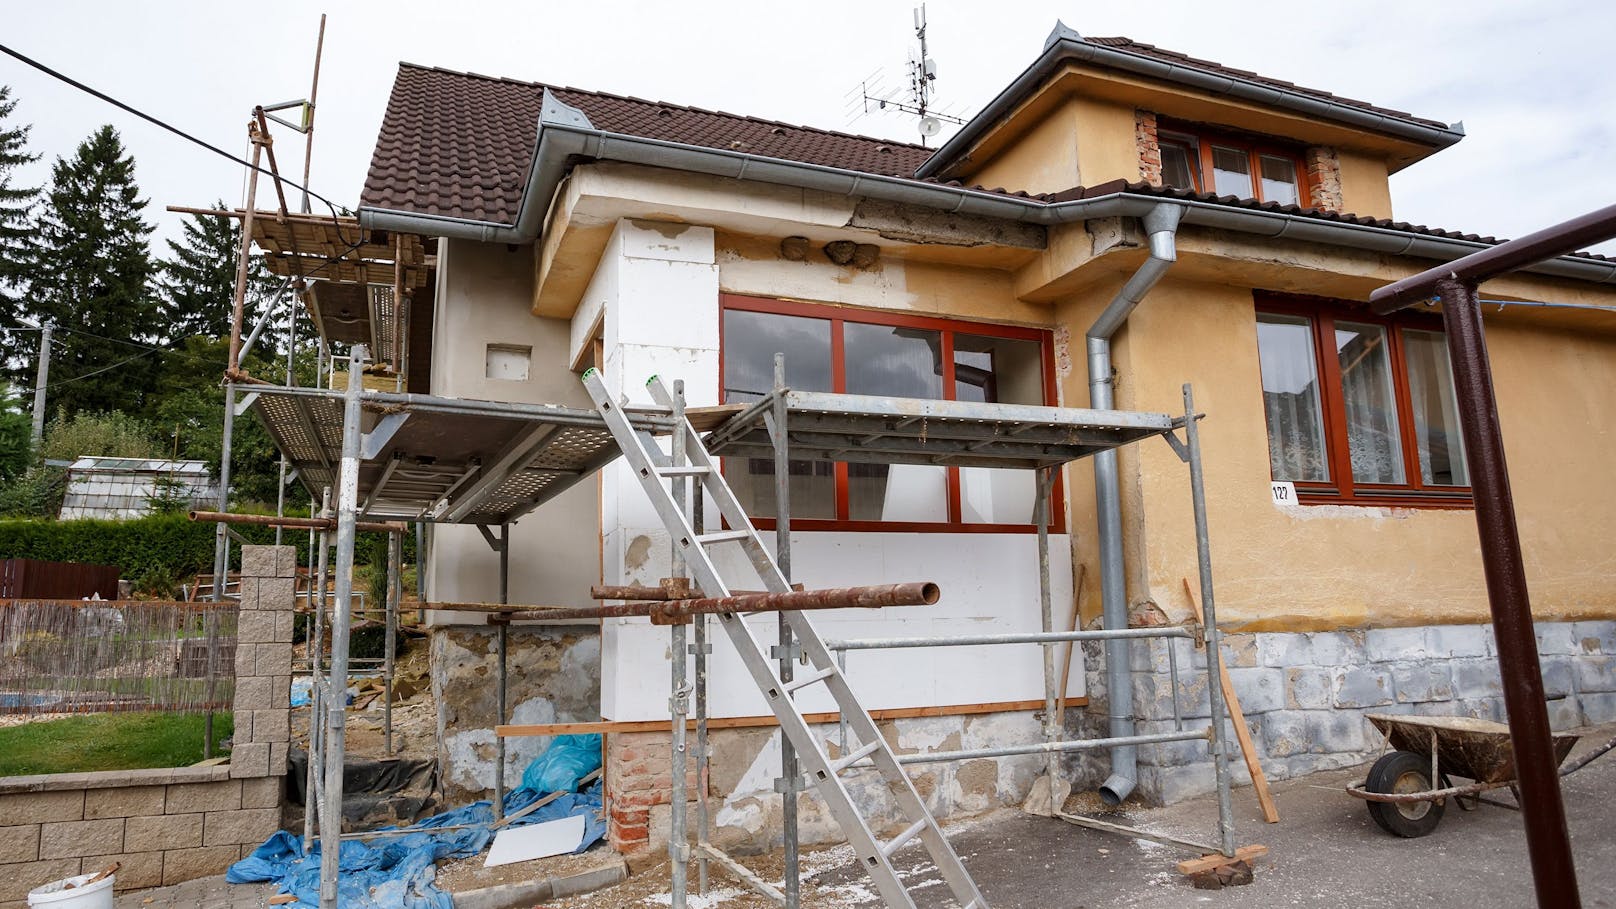 In Österreich wurden in den letzten Jahren weniger Häuser saniert.